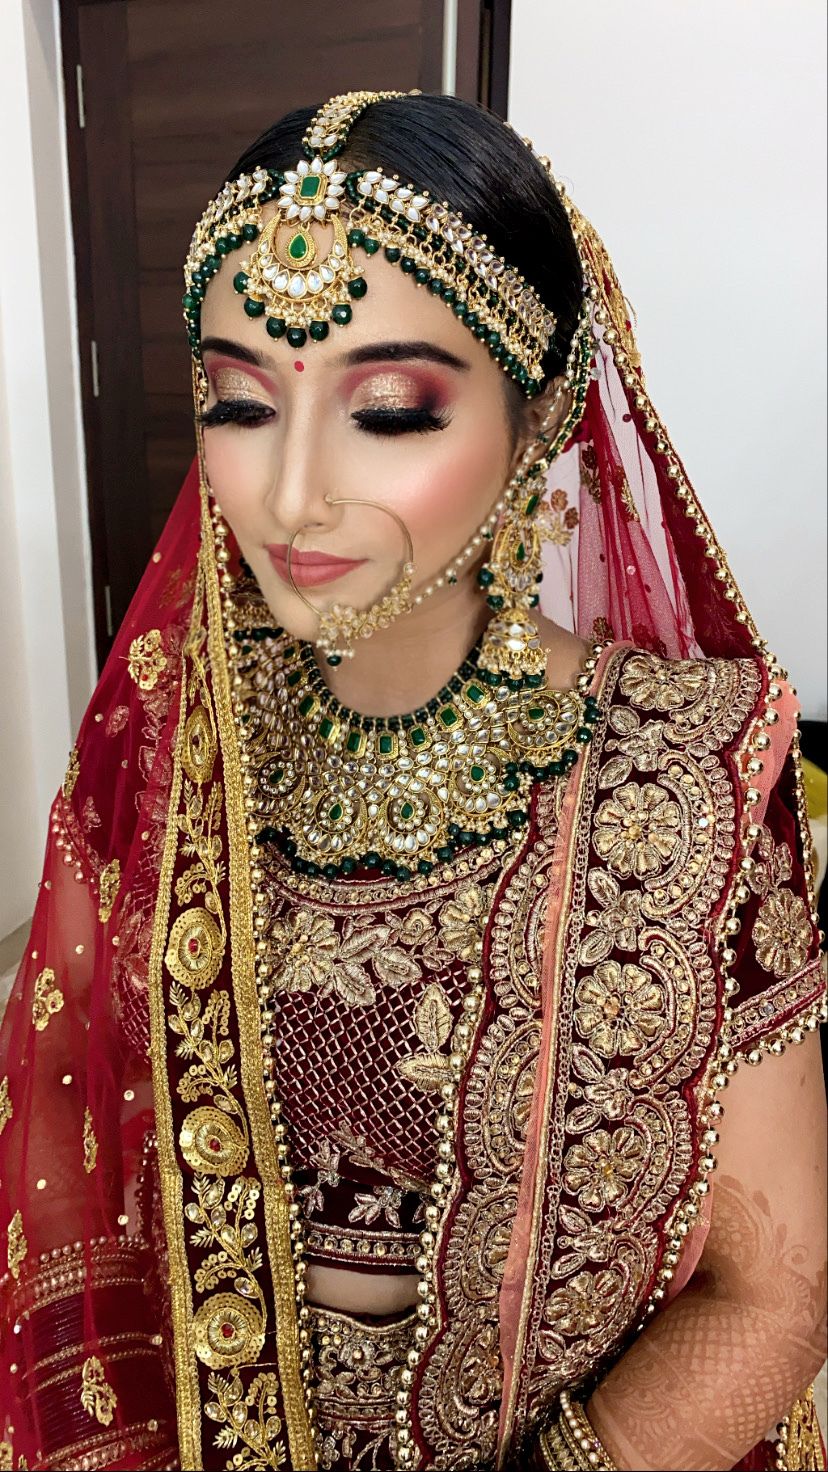 Photo By Makeup Artist Sanya Sehgal - Bridal Makeup